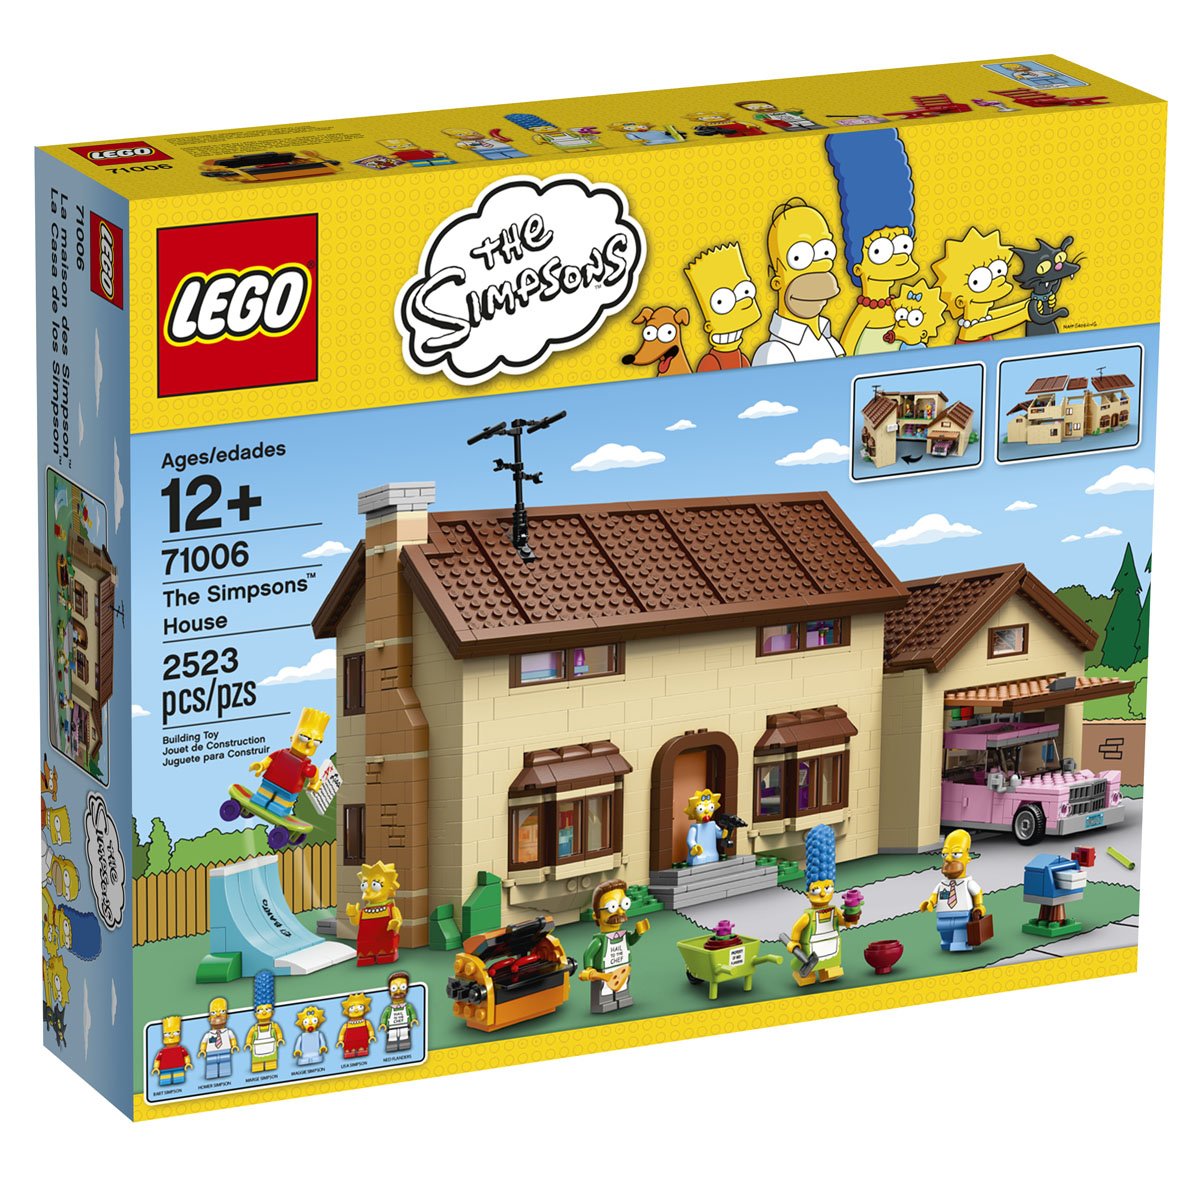 Casa de los Simpsons Lego